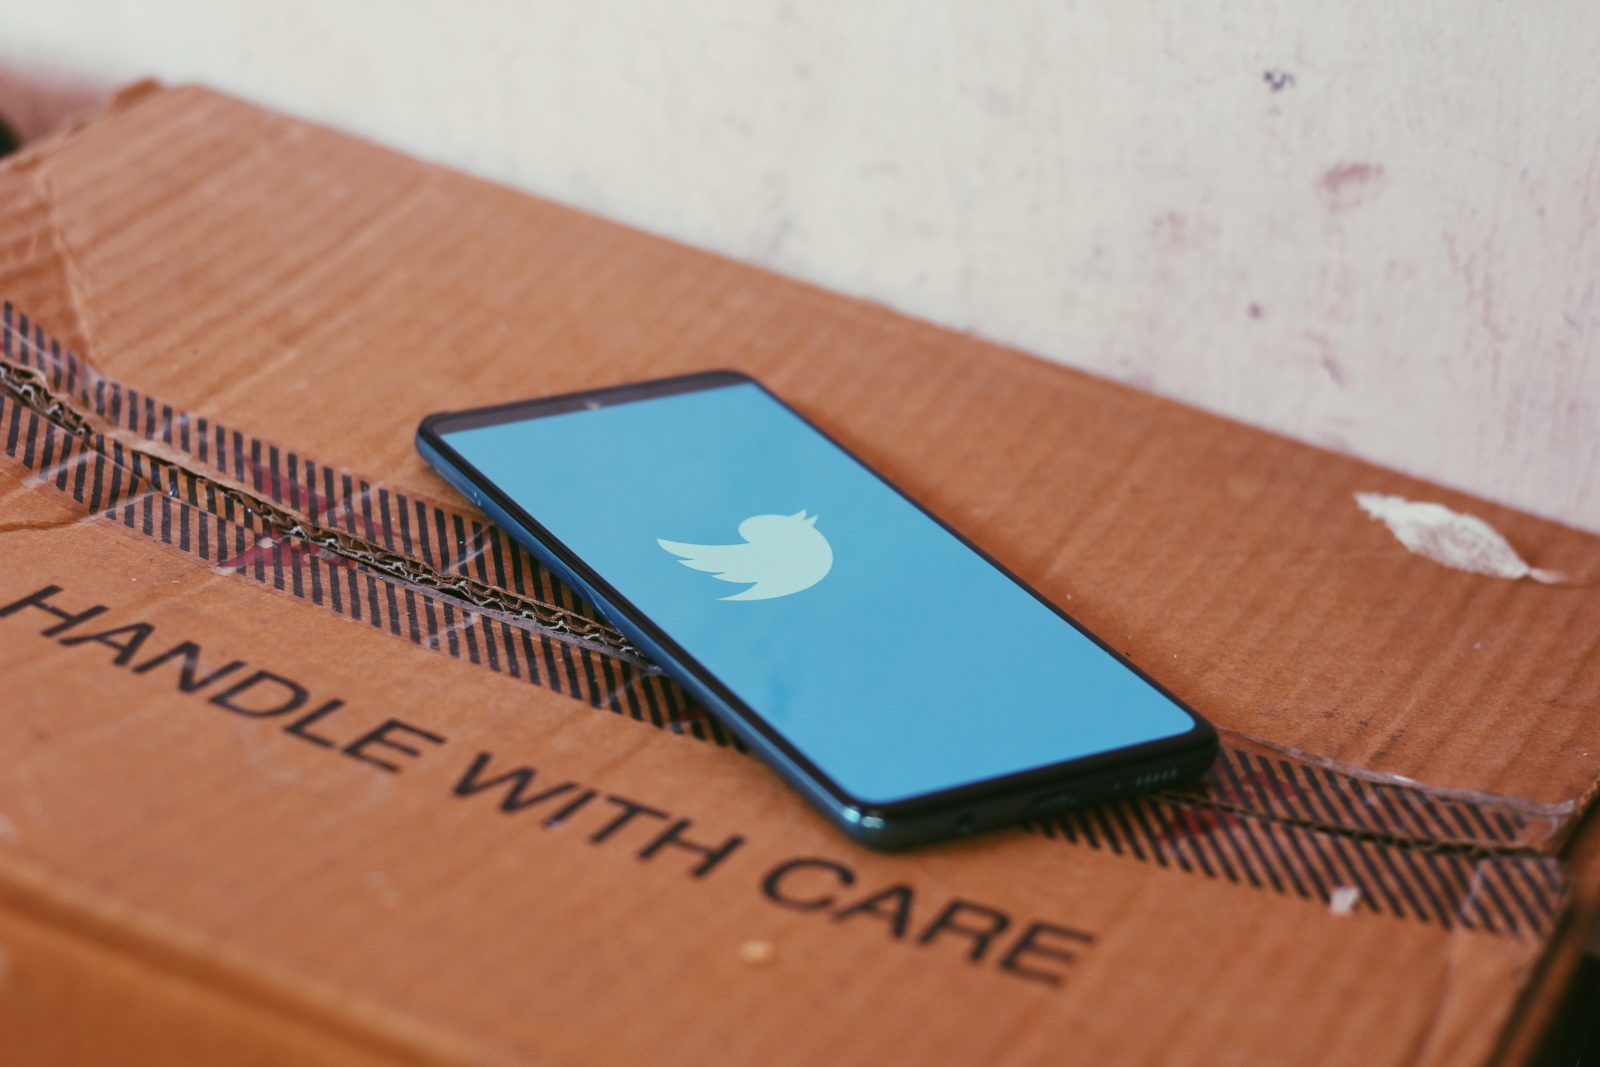 Pahvilaatikon päällä puhelin, jossa on auki Twitterin logo.